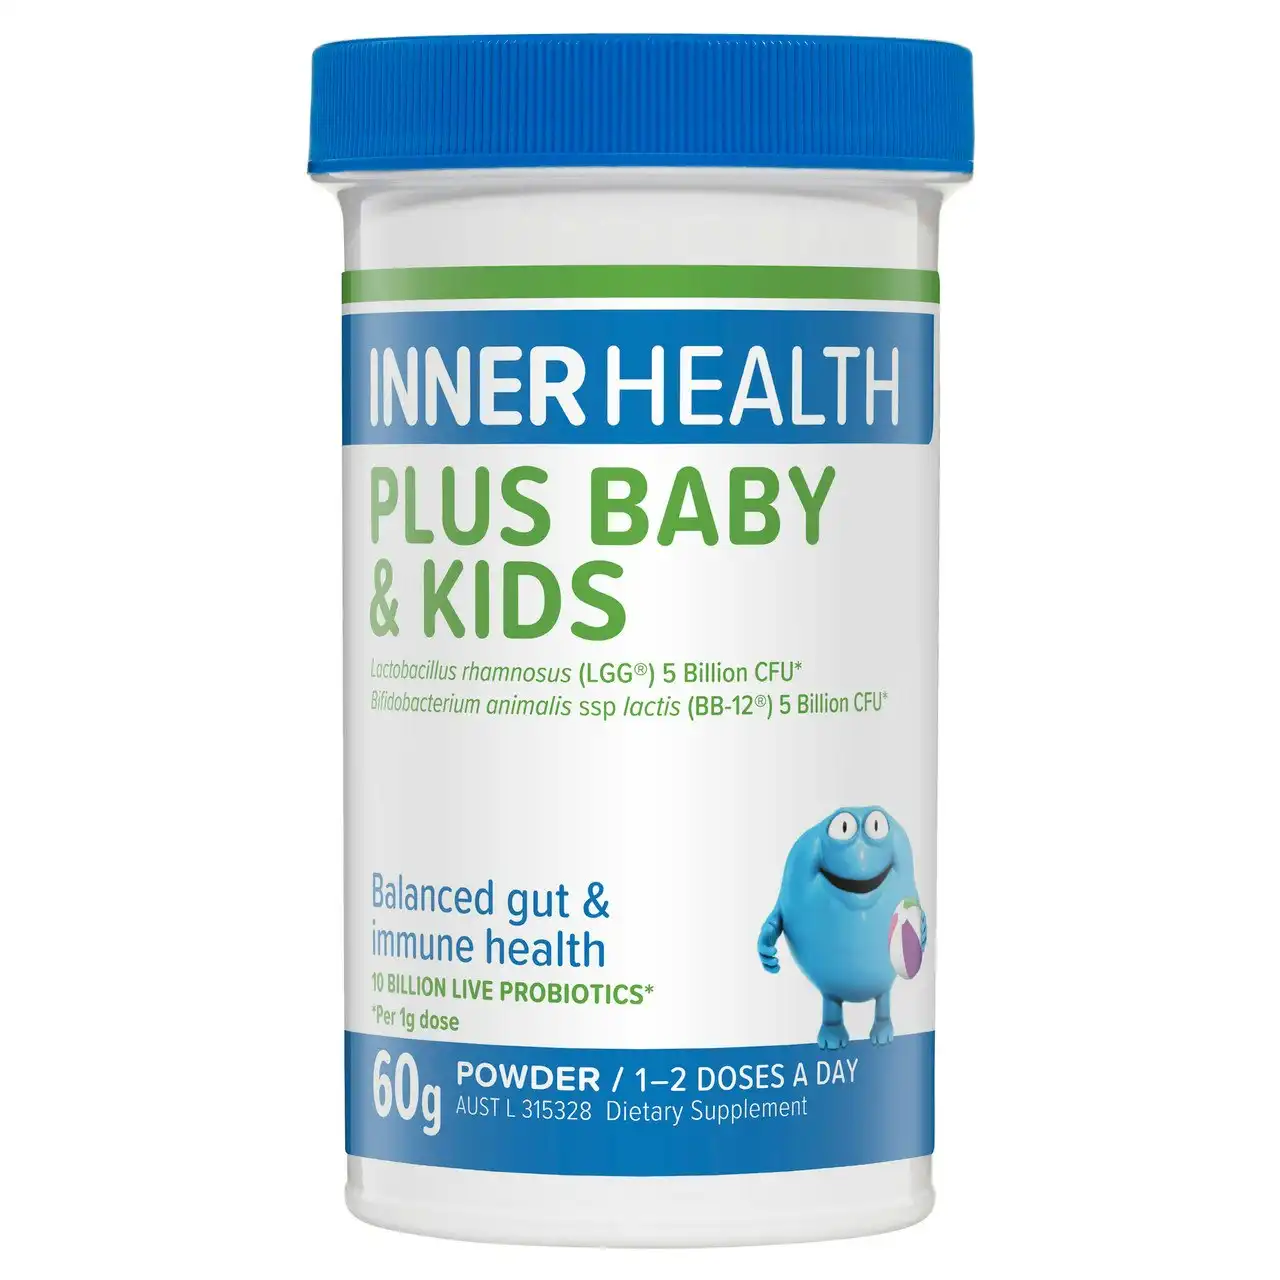 Inner Health Plus Baby & Kids Probiotic 60g Powder